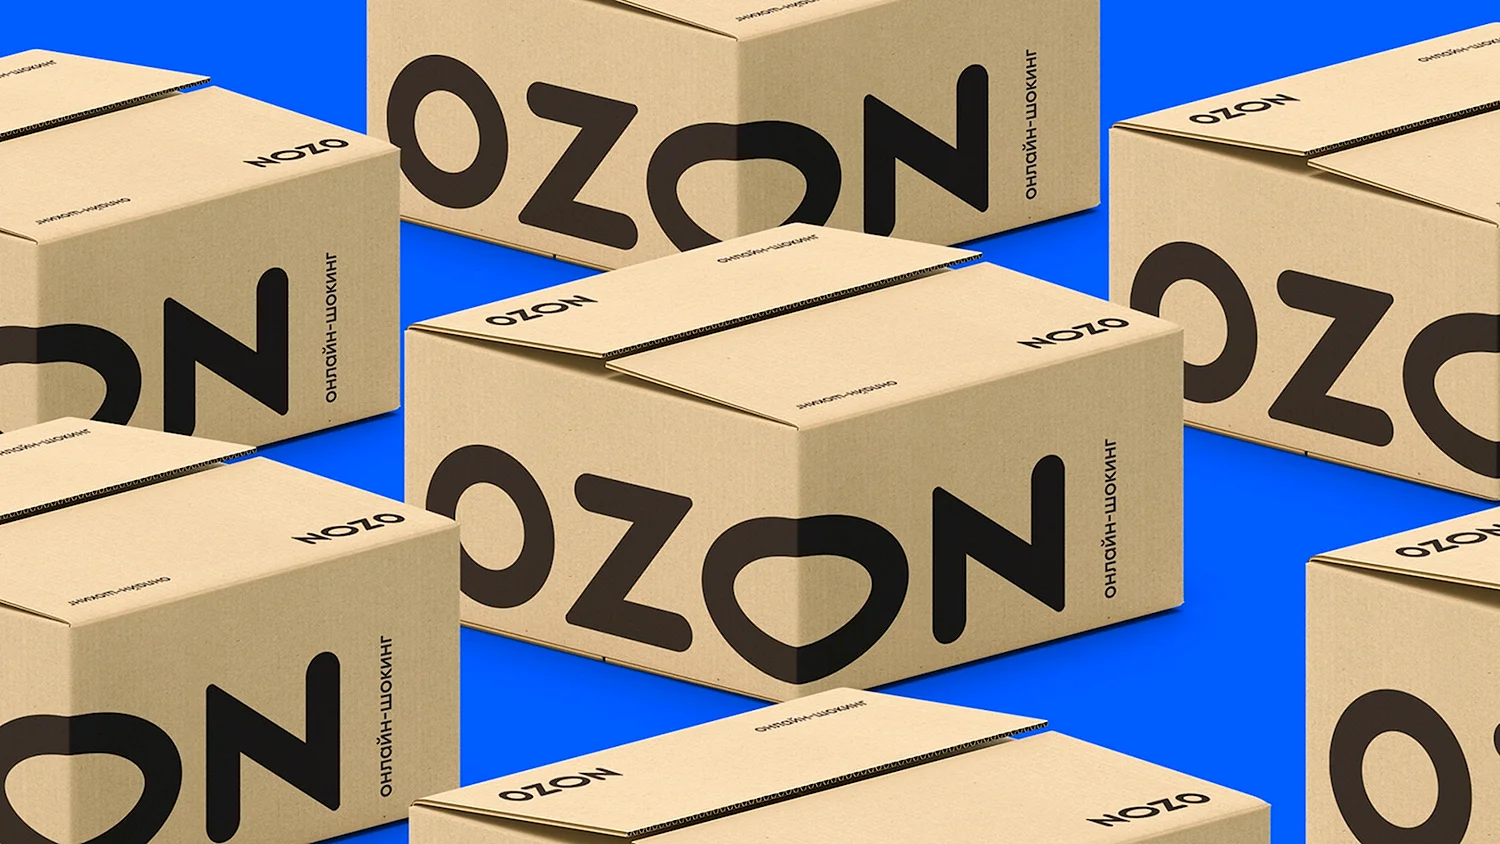 Озон